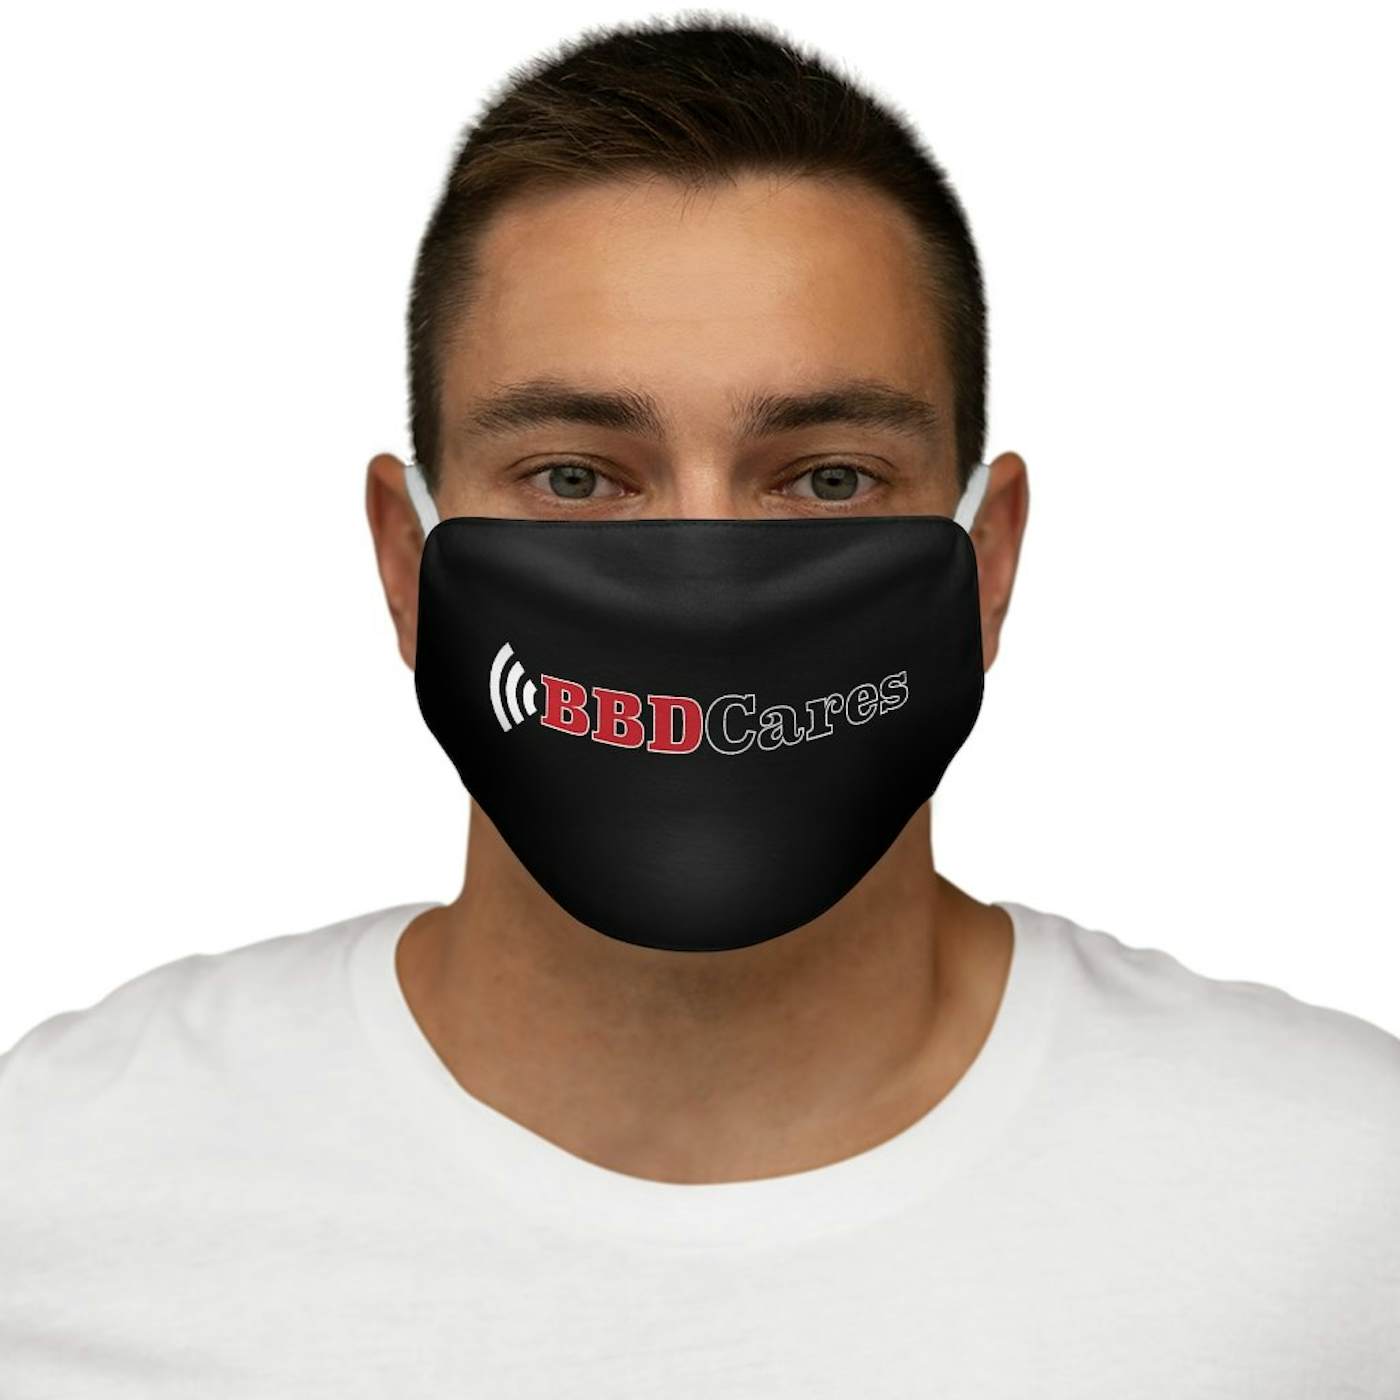 Bell Biv DeVoe BBD Cares Facemask